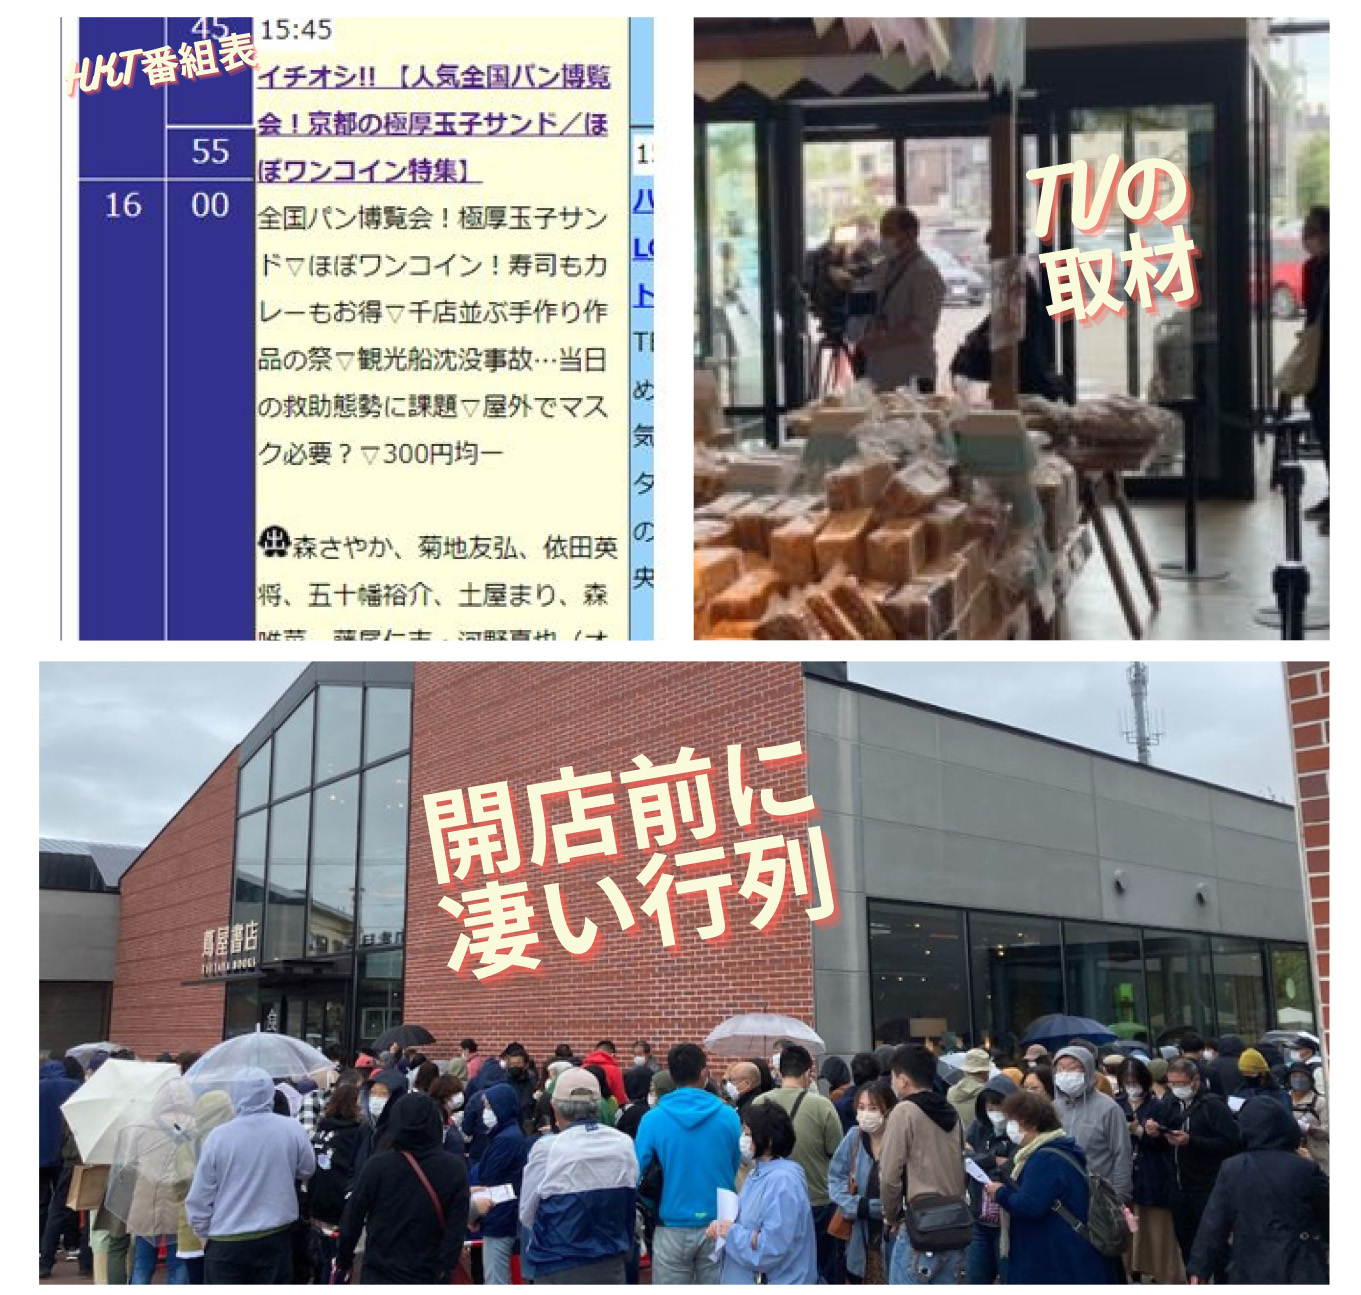 北海道 江別 全国パン博覧会 でご当地パンを日替わりで販売 お知らせ 株式会社g7ジャパンフードサービス